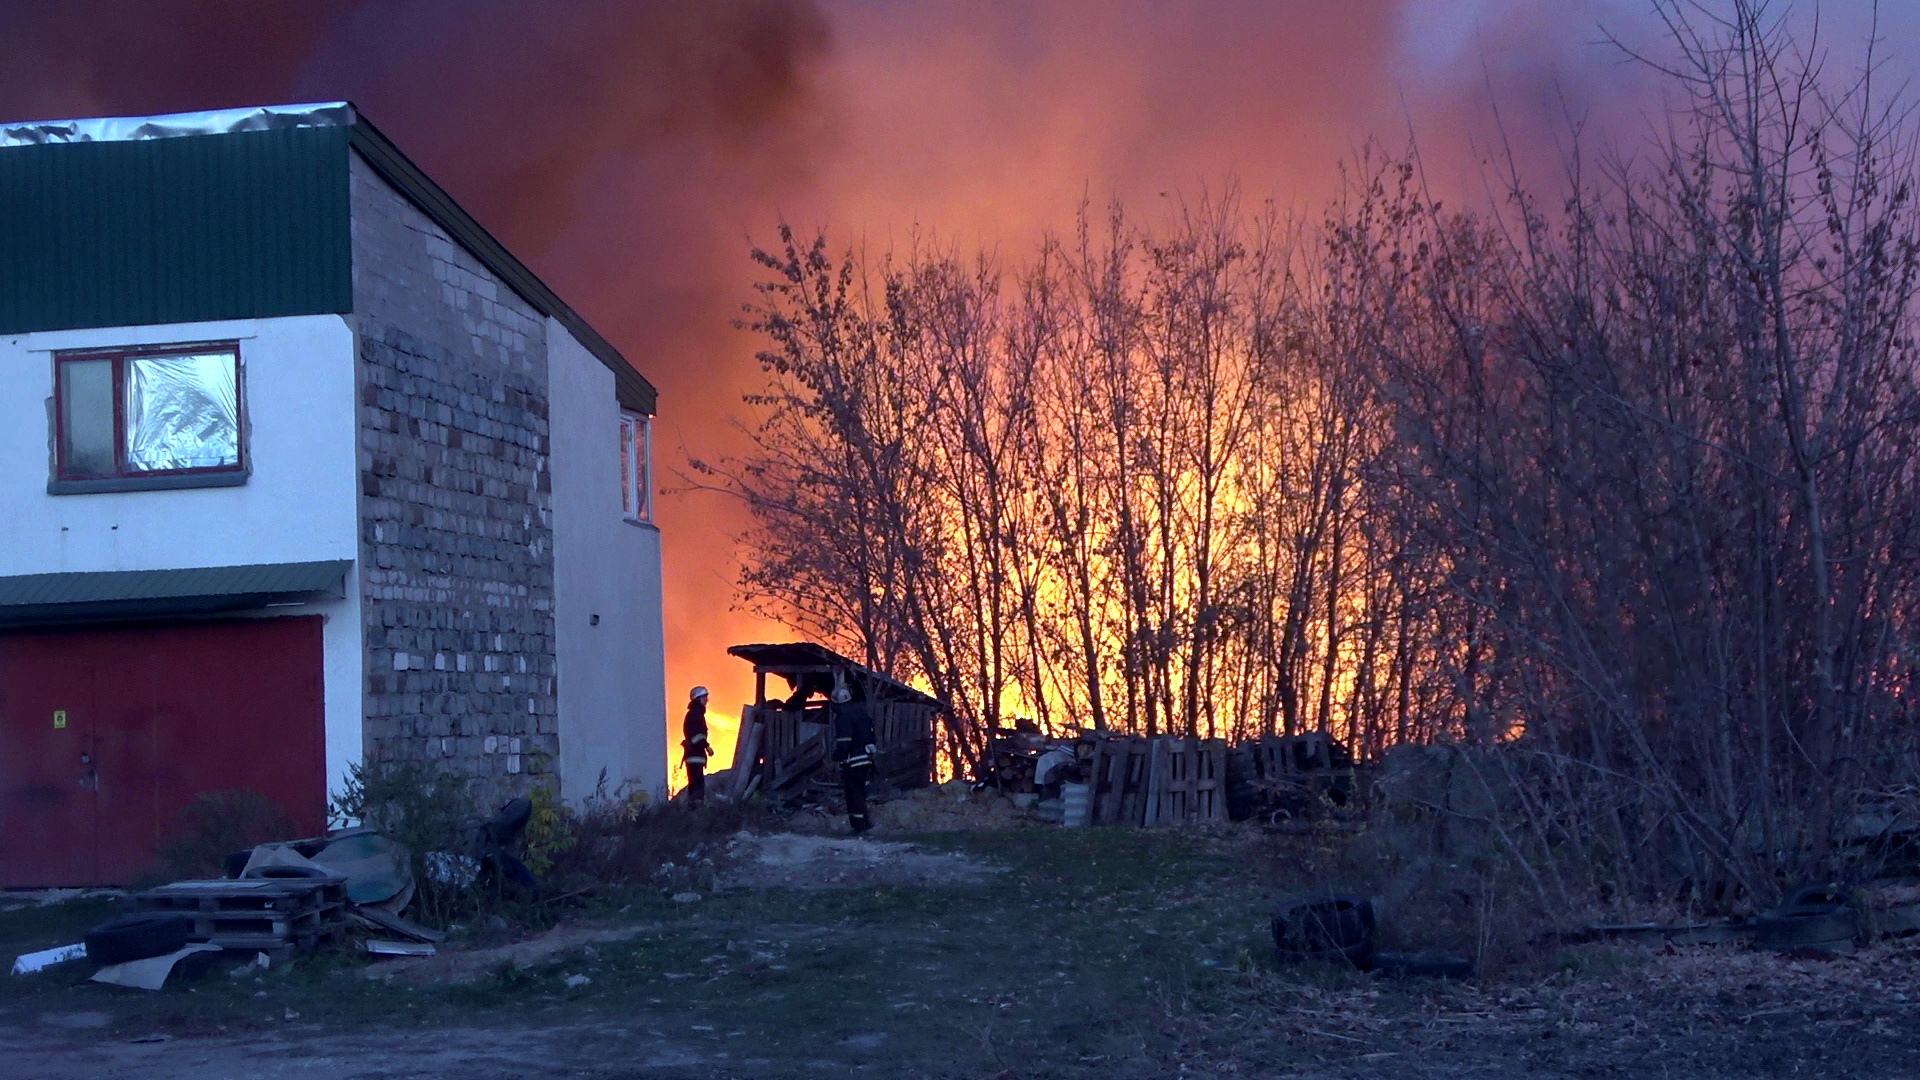 Как сообщили порталу "Луганск онлайн" в пресс-службе Министерства чрезвычайных ситуаций и ликвидации последствий стихийных бедствий Луганской Народной Республики, в Луганске ликвидирован крупномасштабный пожар в районе бывшего трамвайного депо.